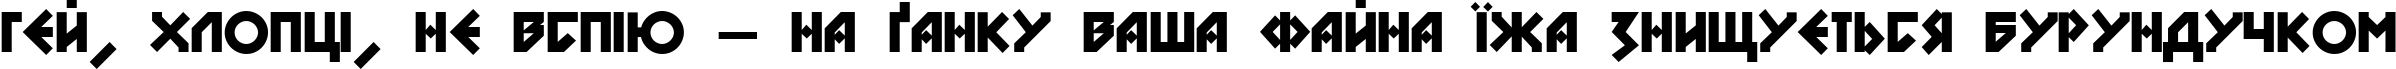 Пример написания шрифтом DS Nova Black текста на украинском